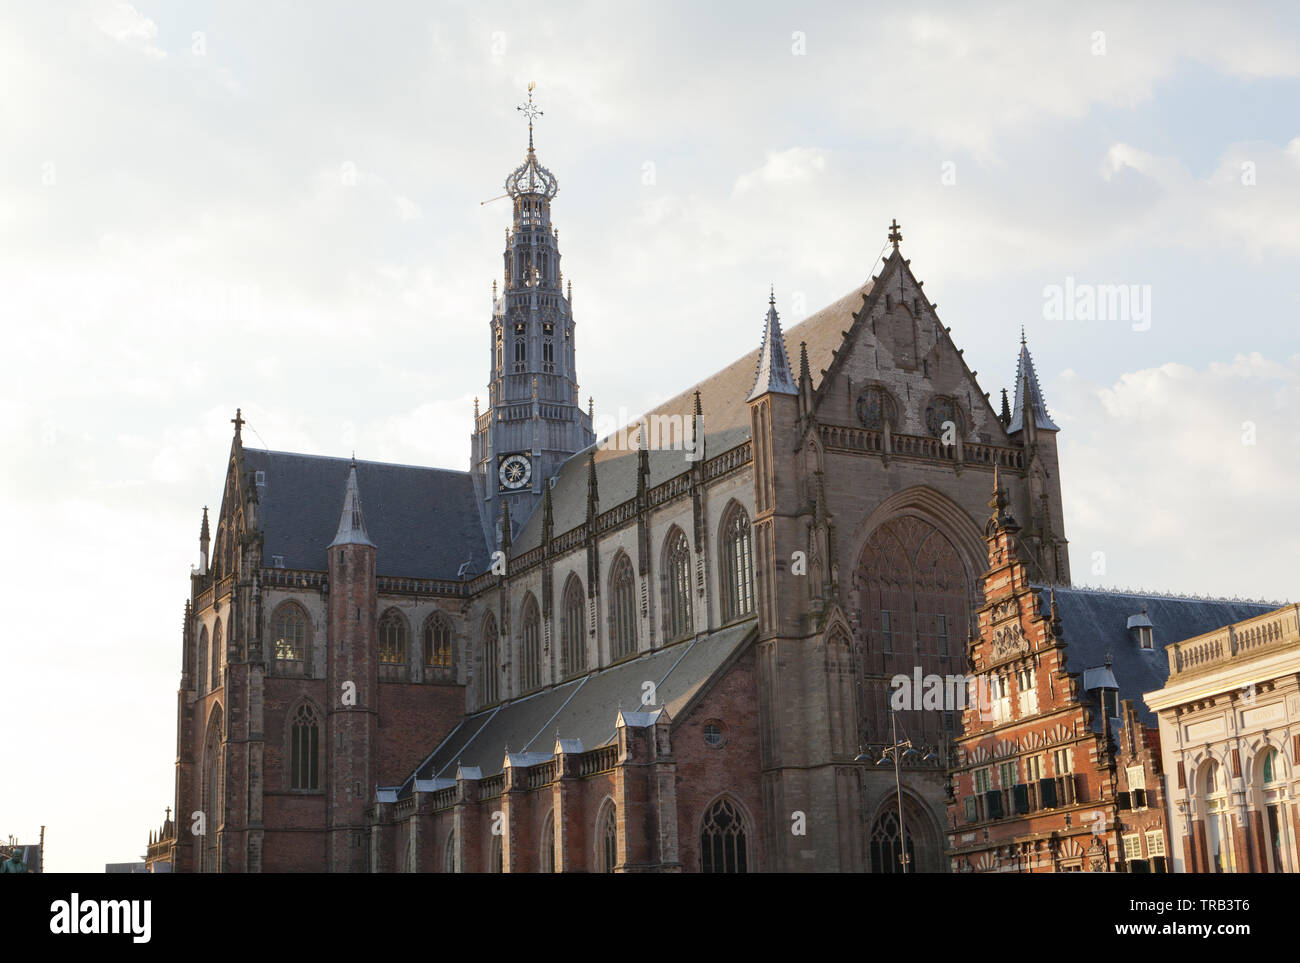 Grote Kerk or St.-Bavokerk, Haarlem, Netherlands. Stock Photo